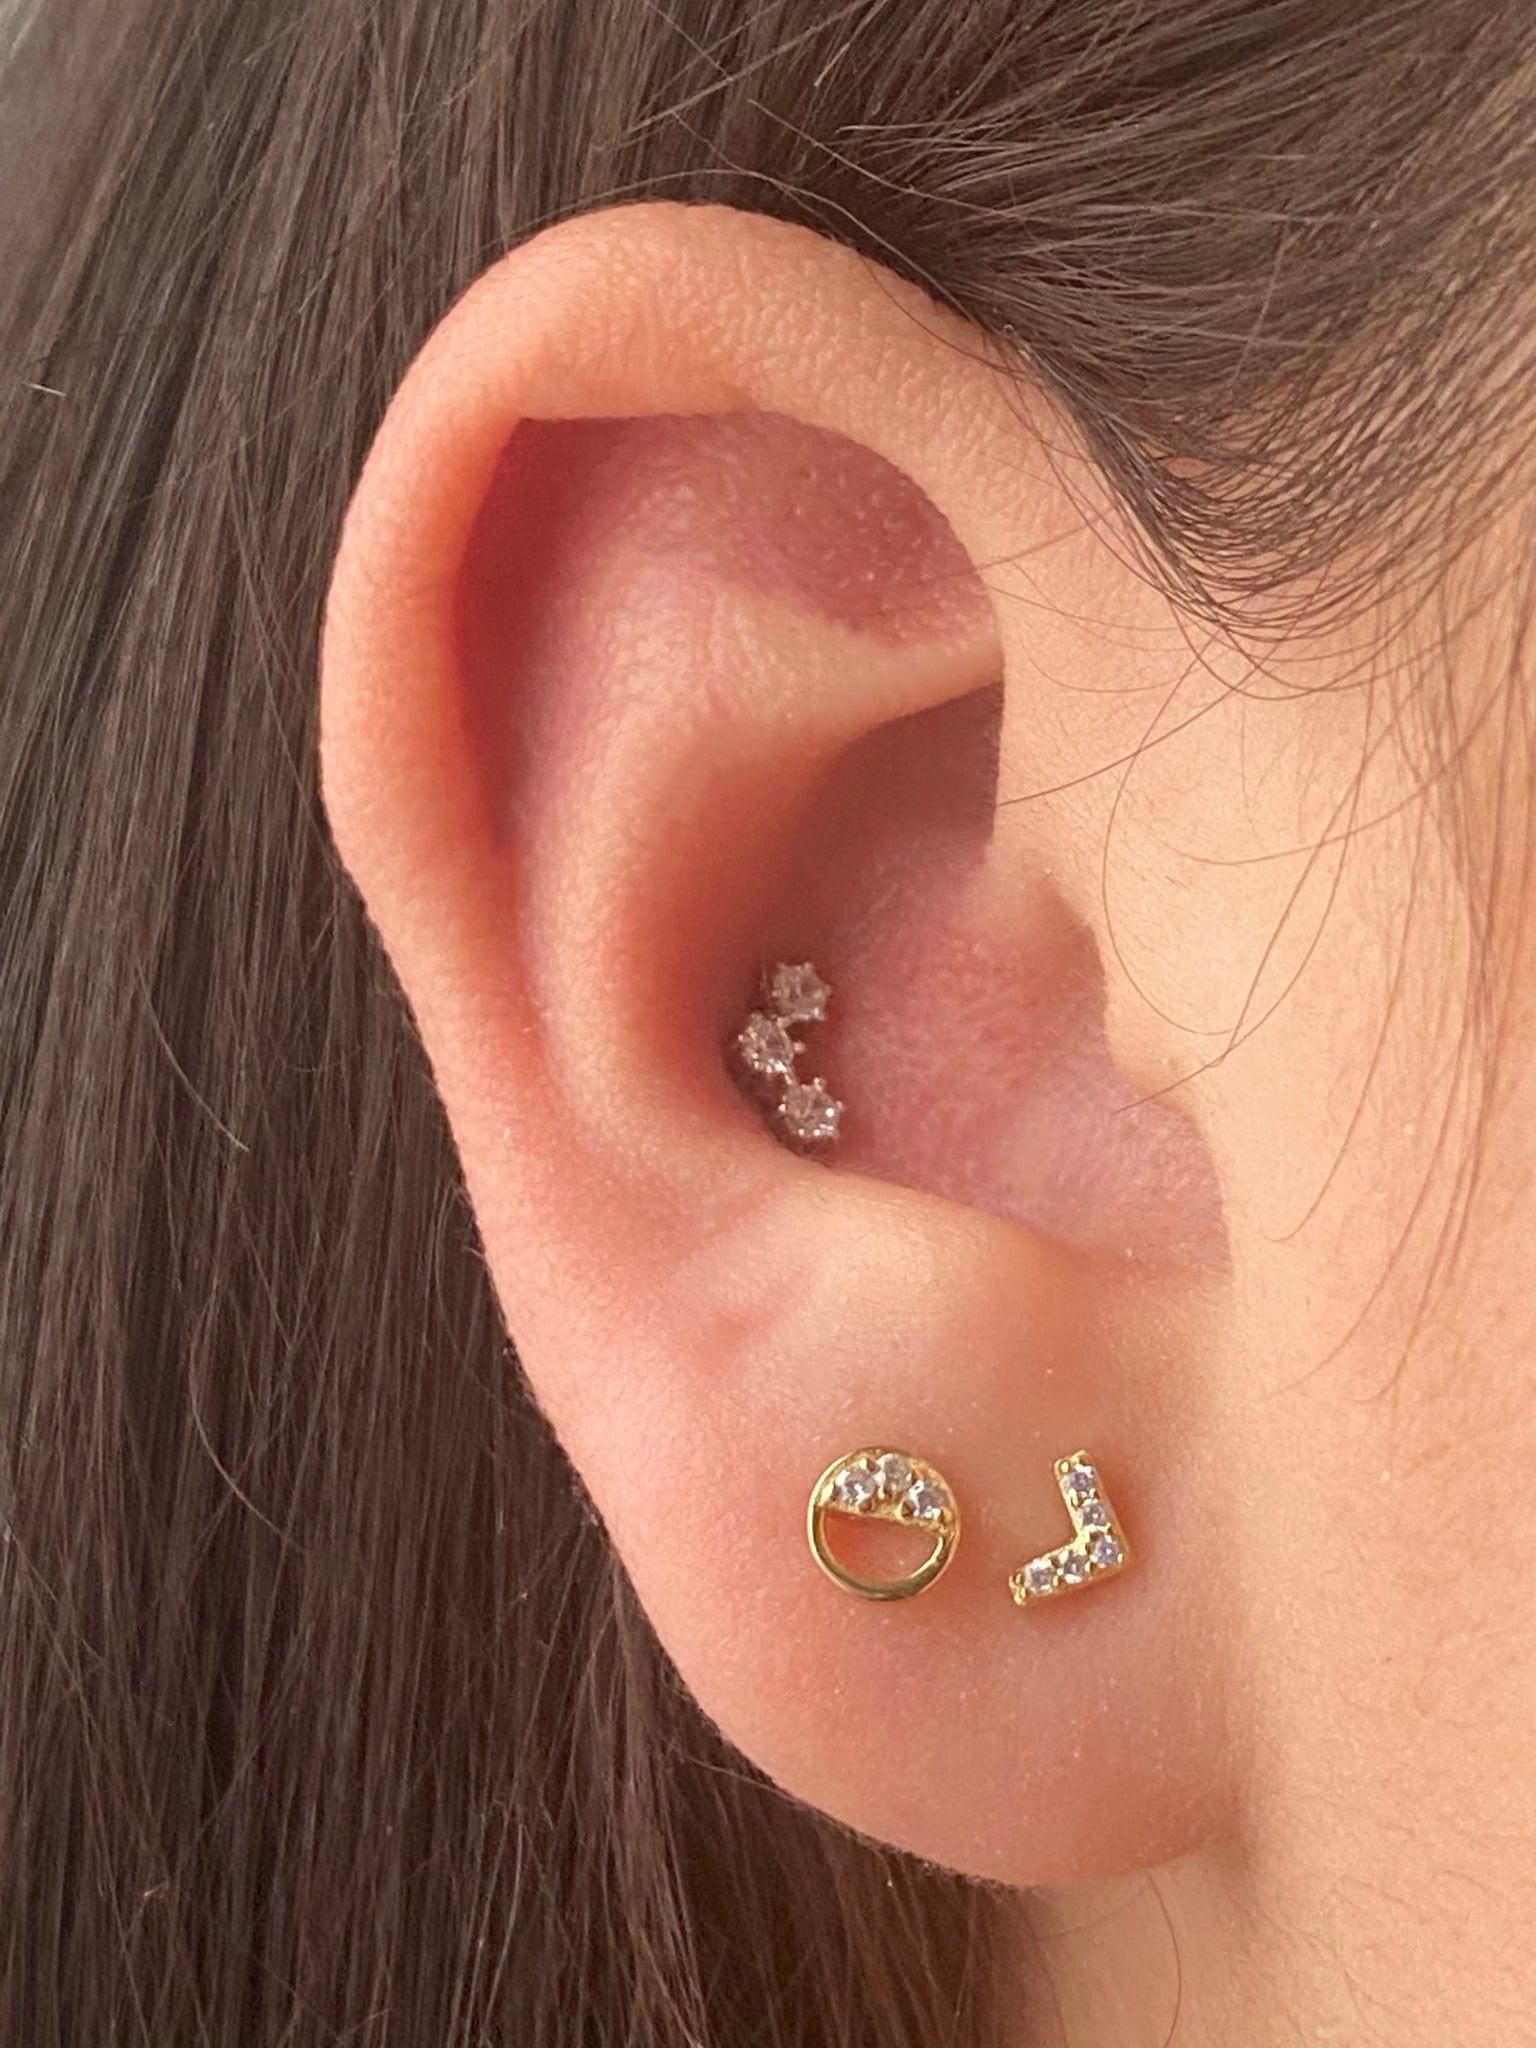 Buy 16G PAIR Gold CZ Zodiac Stars Cartilage Earrings, Helix Stud Earring,  Celestial Stars Stud Earrings, Flat Back Stud Earrings Online in India -  Etsy